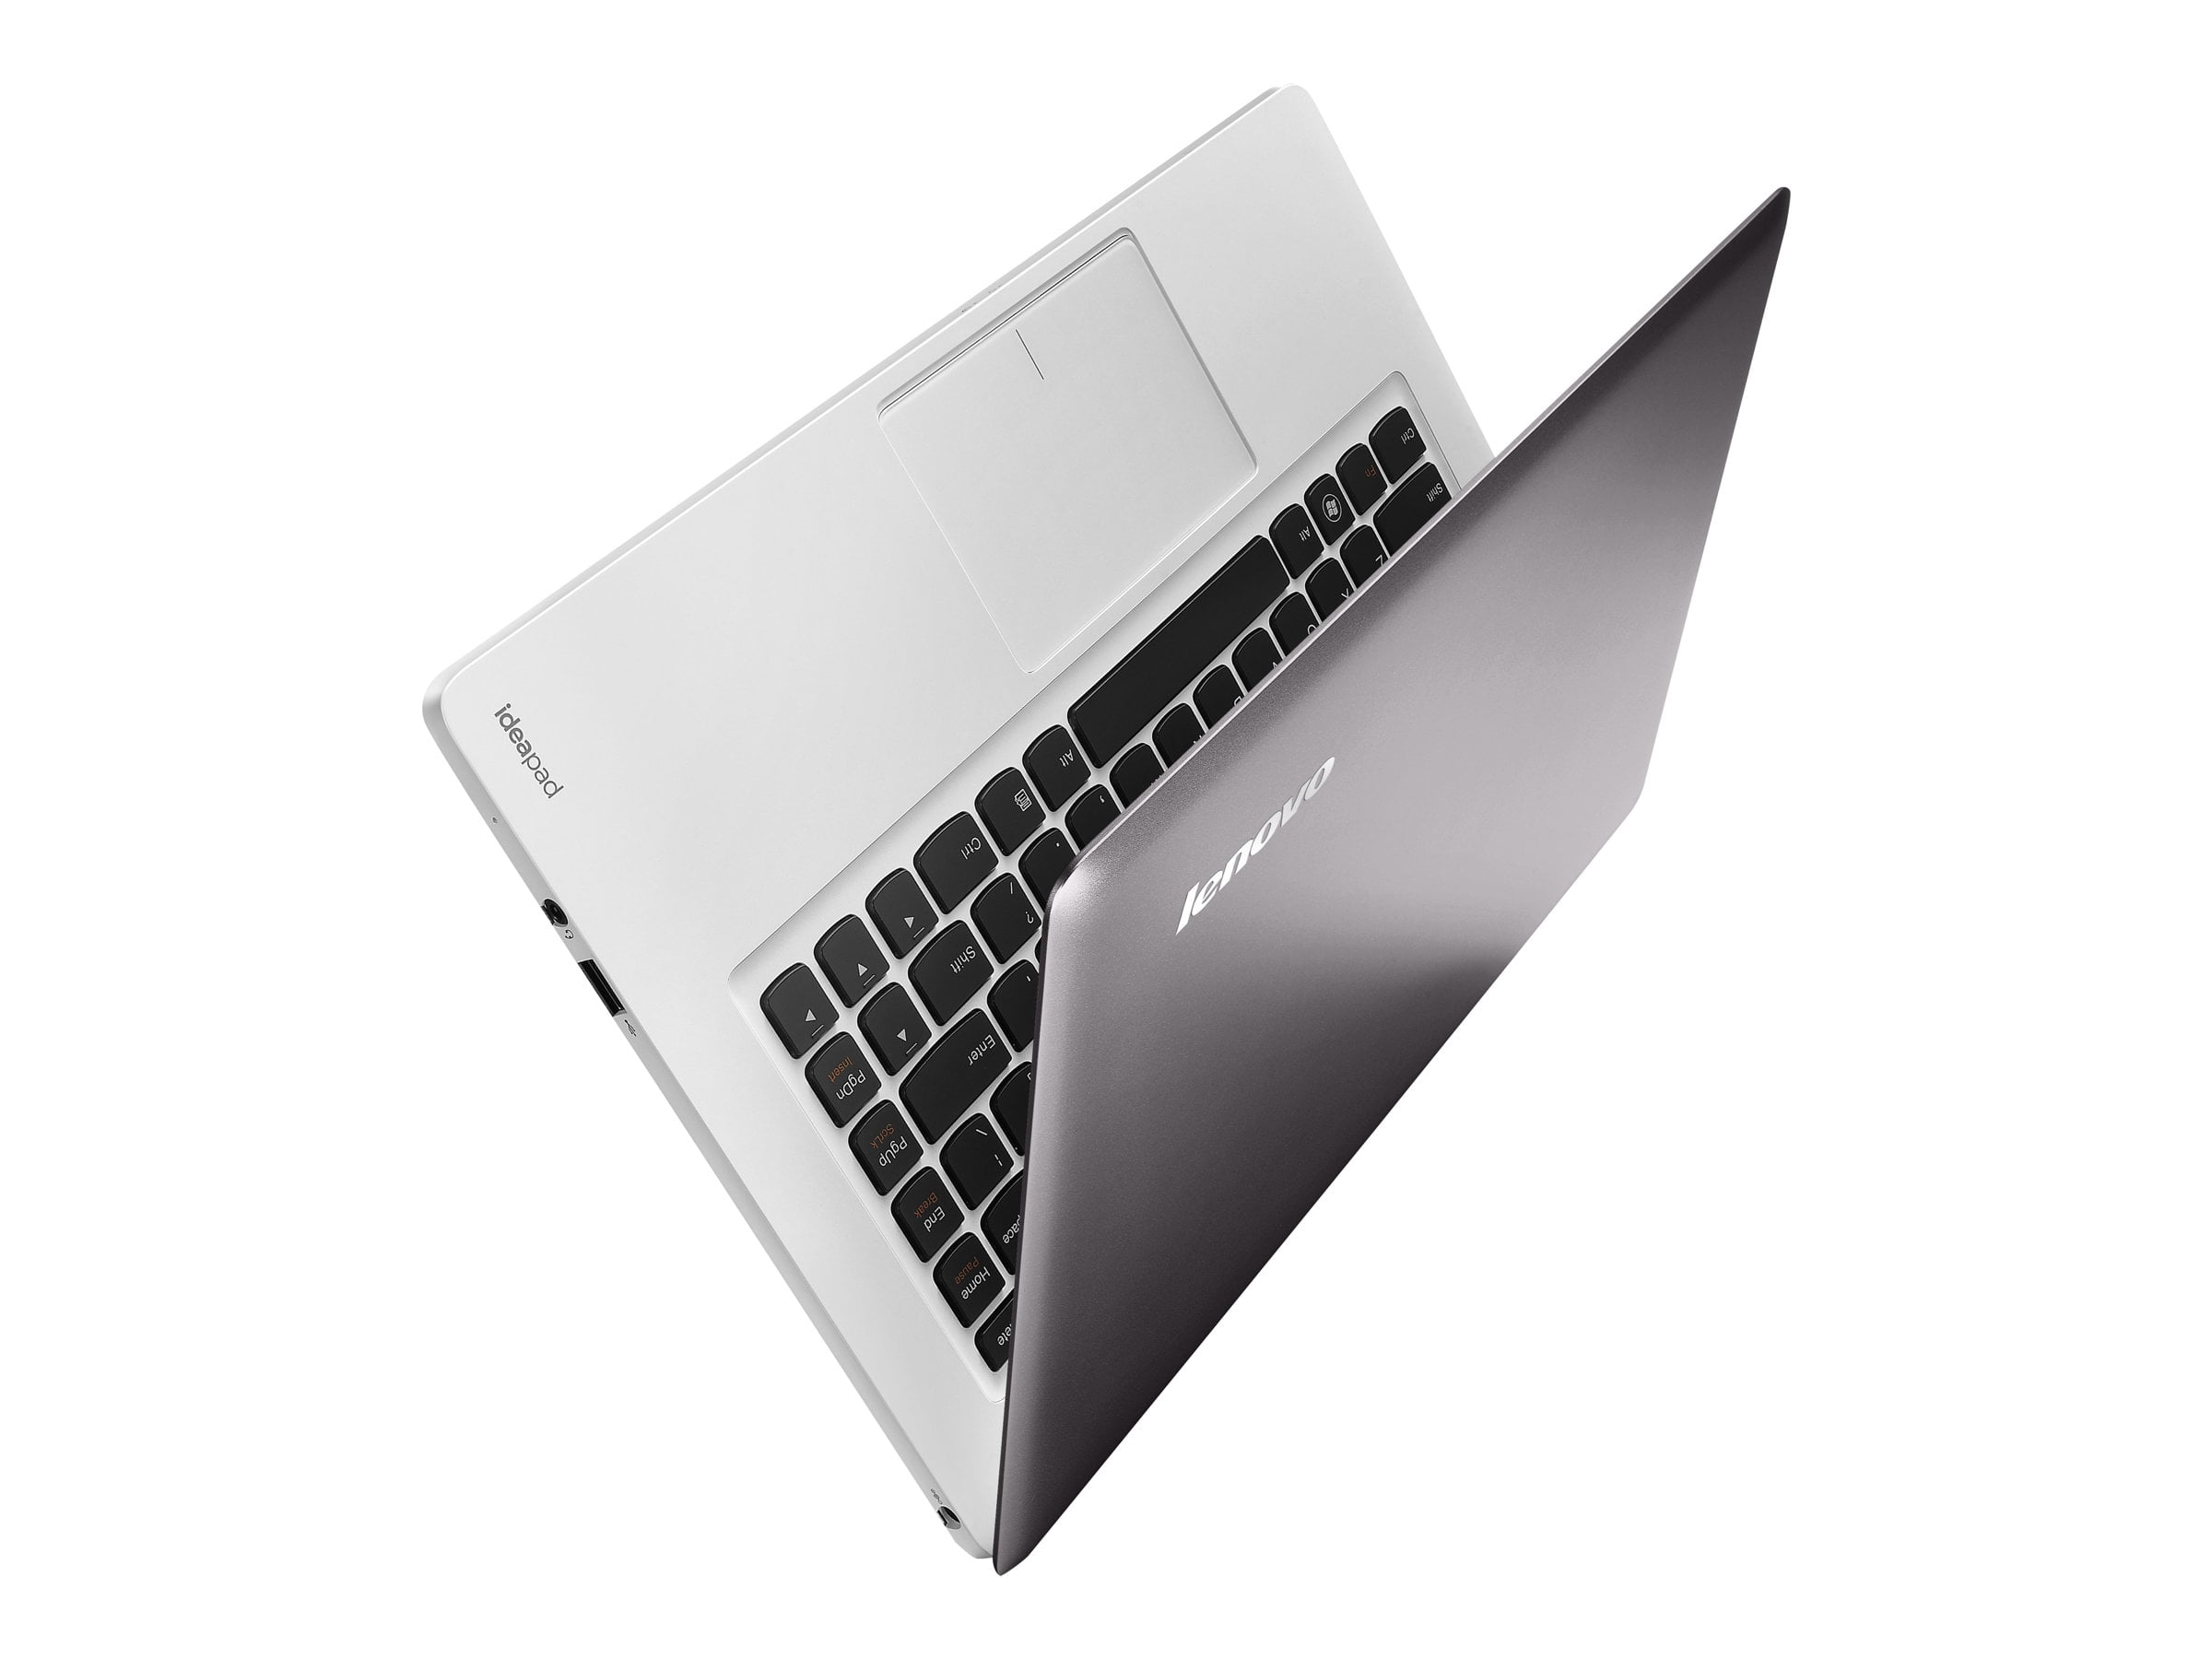 Lenovo IdeaPad U310 4375 - Ultrabook - Intel Core i3 3217U / 1.8 GHz - Win 8 HD Graphics 4000 - 4 GB RAM - 500 GB HDD (24 GB SSD cache) - 13.3" VibrantView 1366 x 768 (HD) - gray - Walmart.com